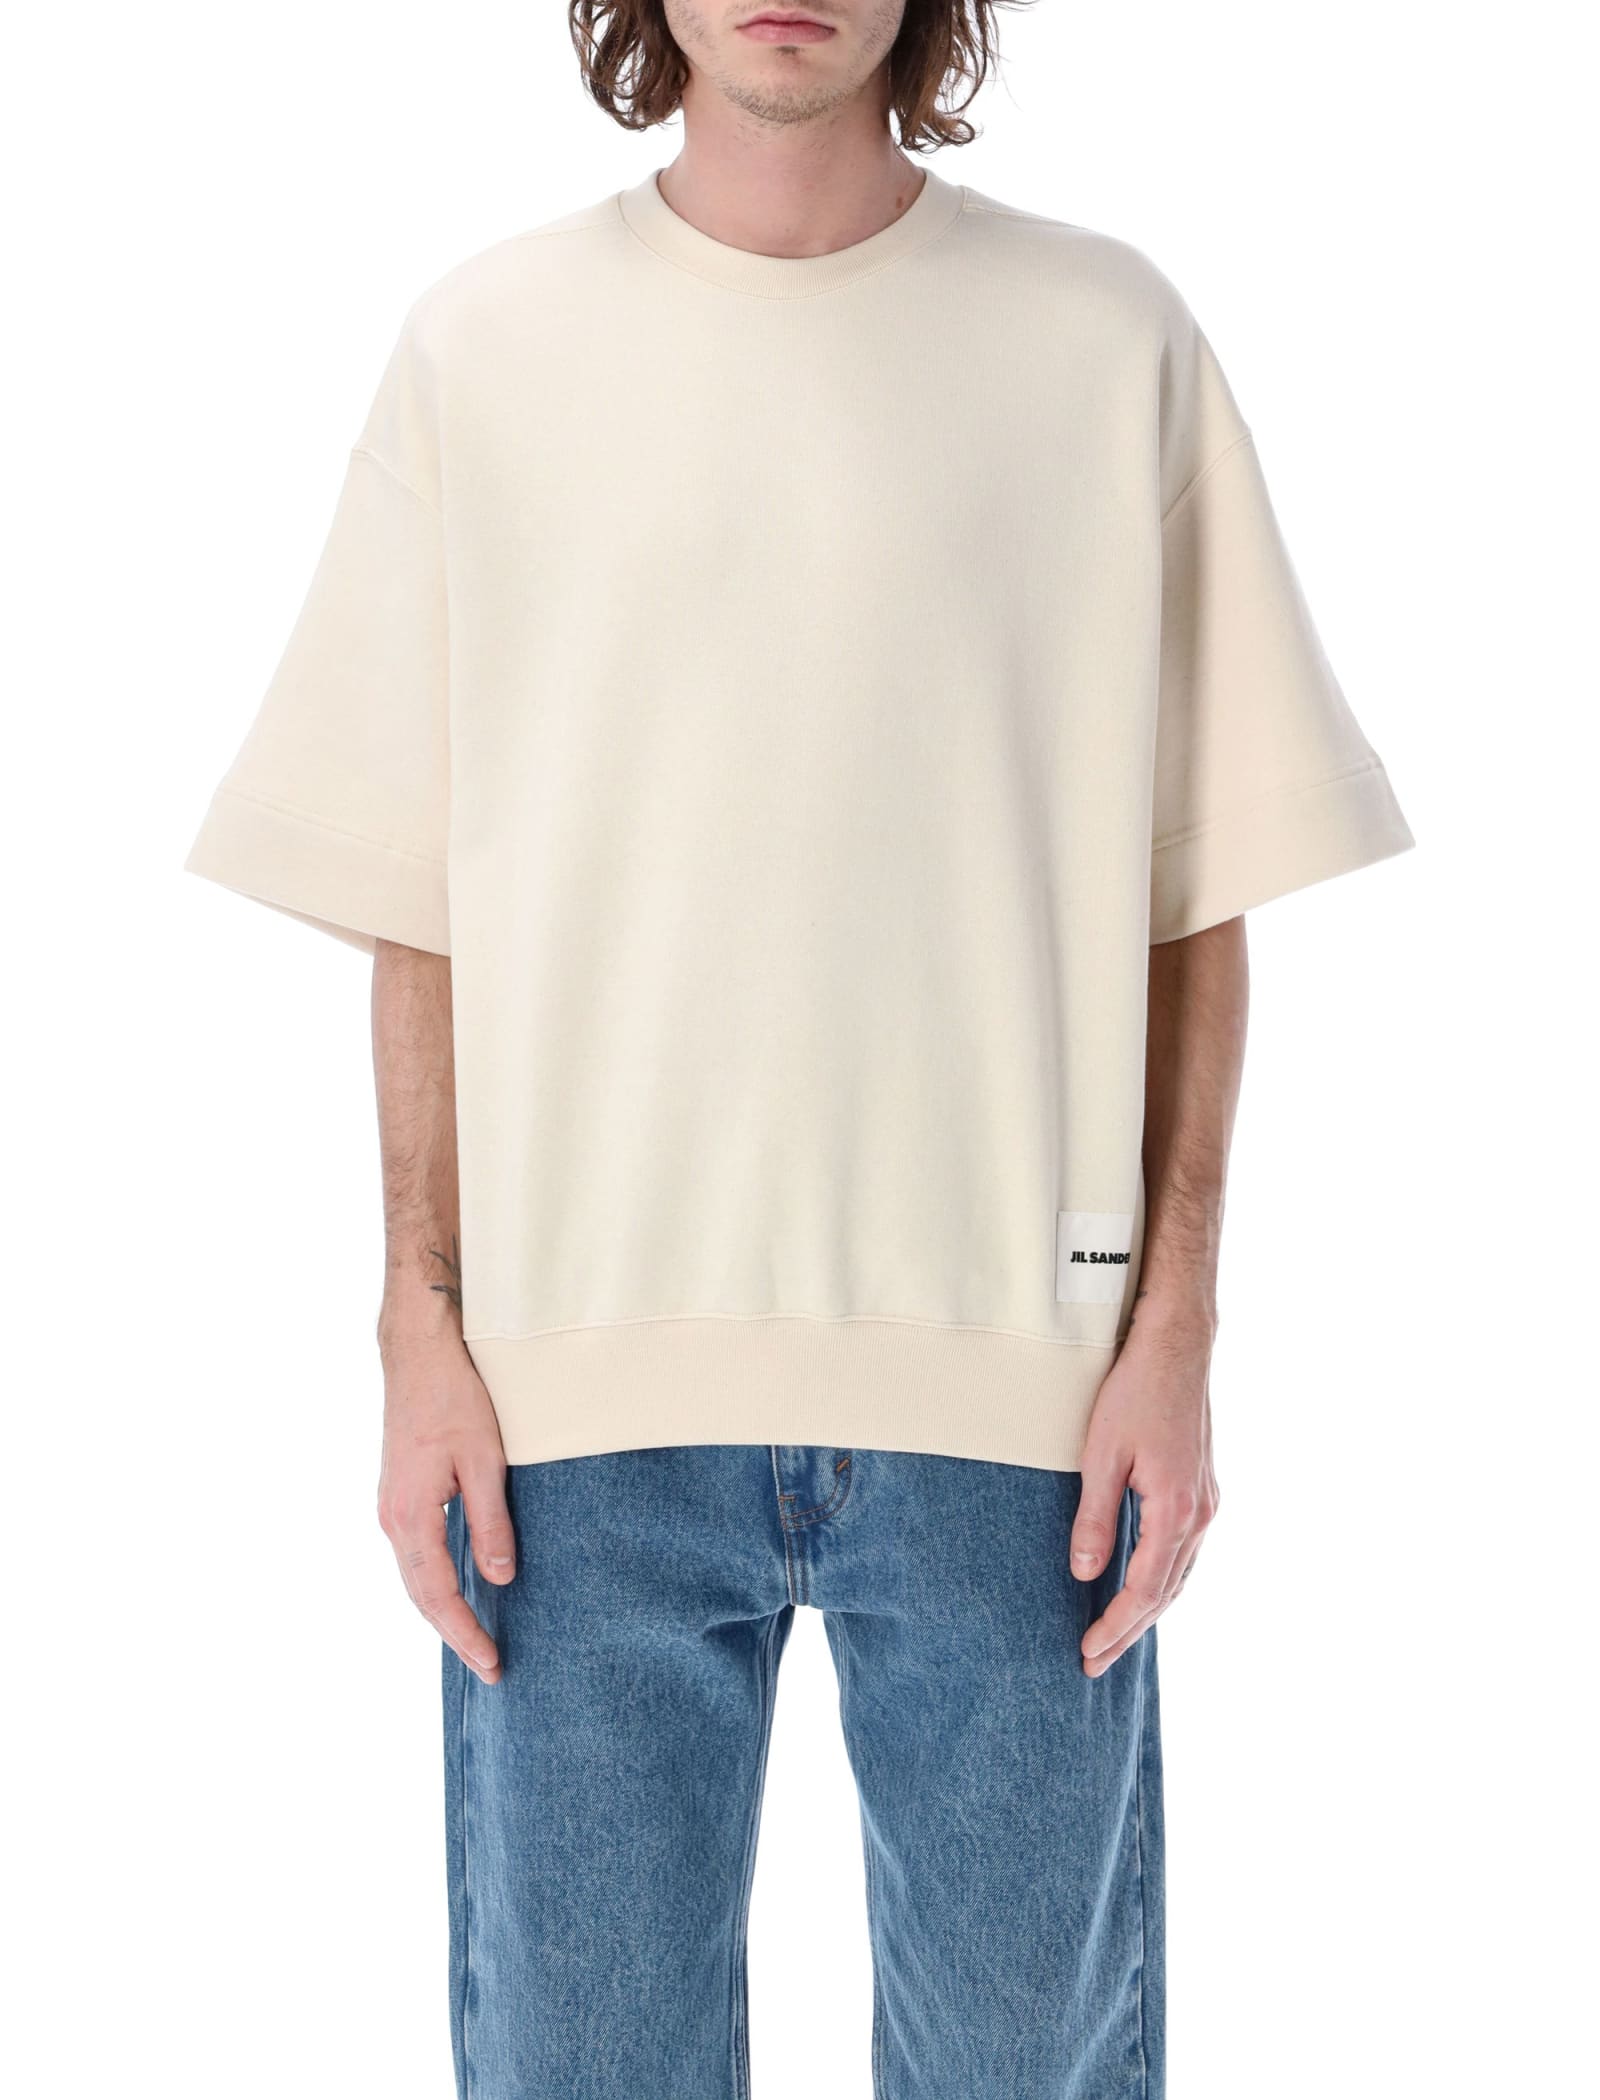 Jil Sander Short Sleeves Sweatshirt